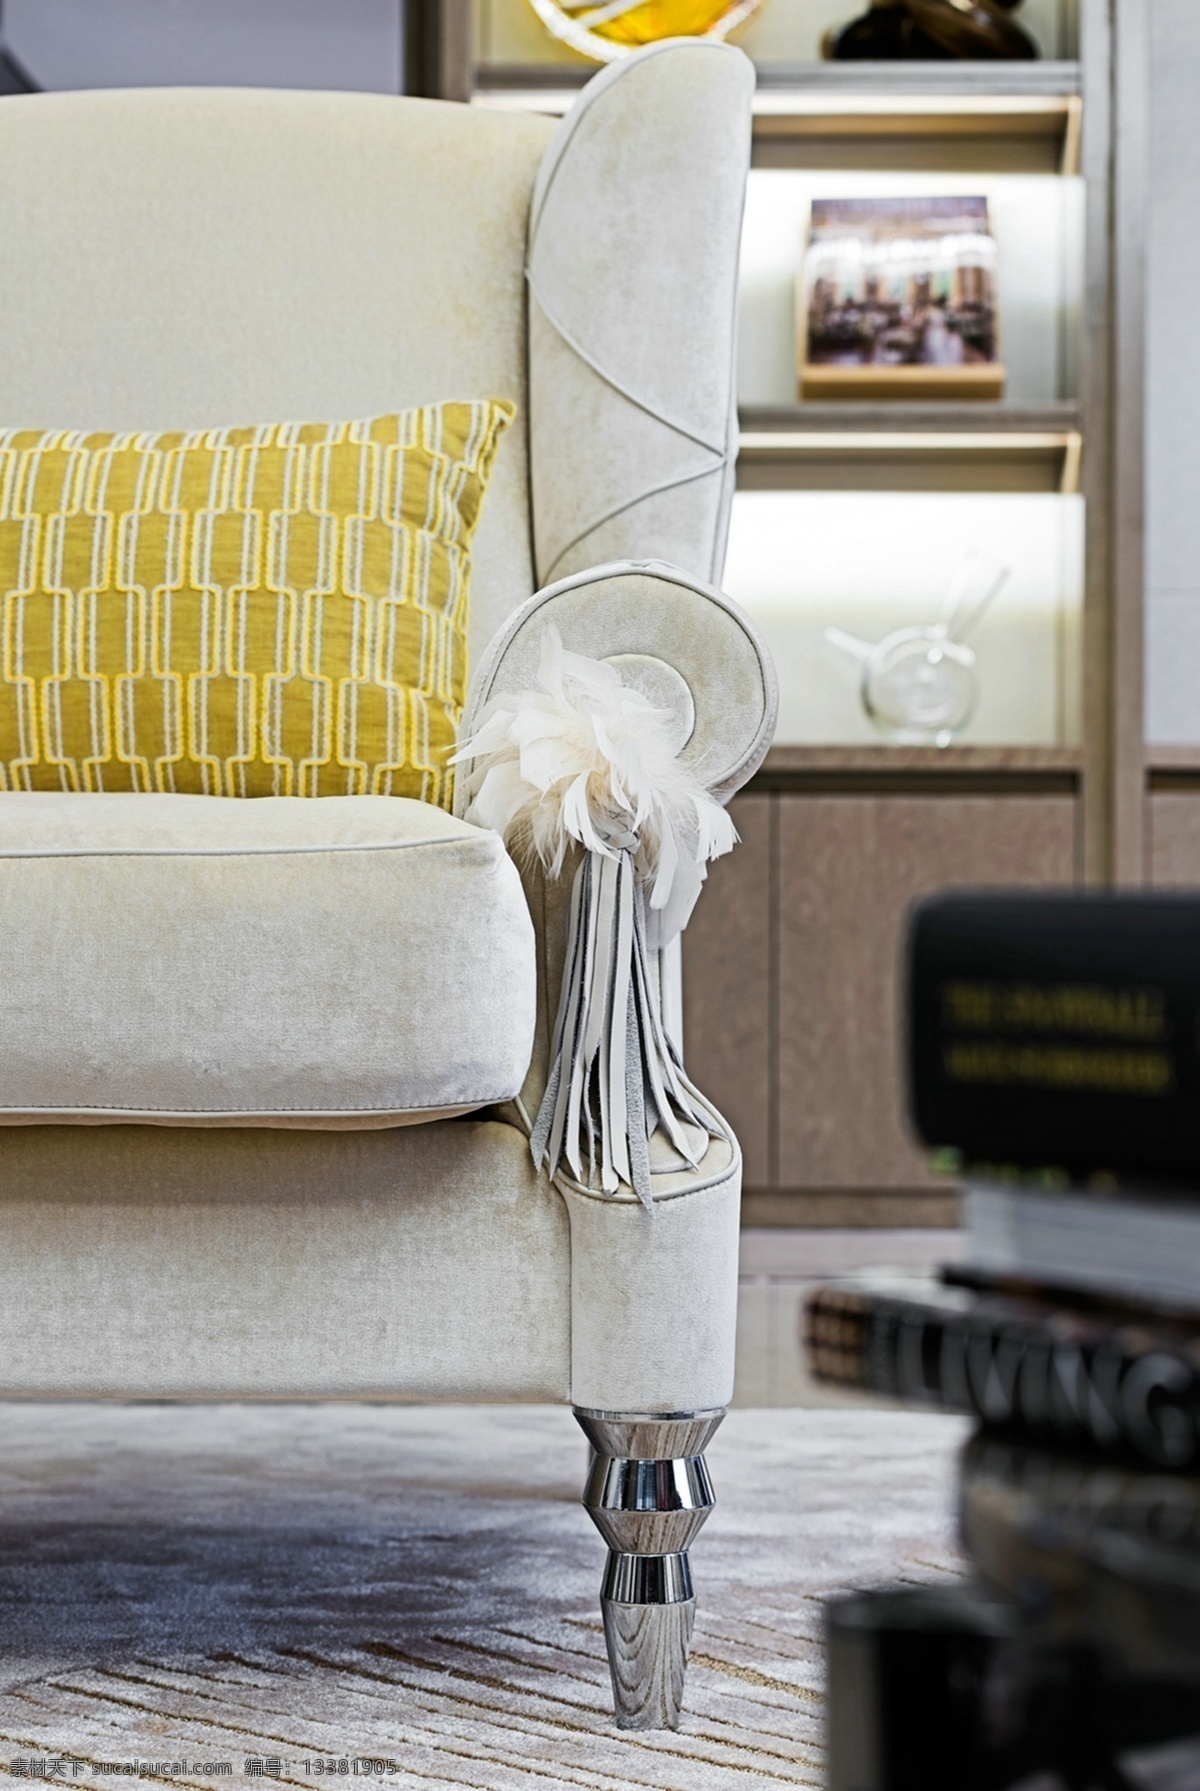 富丽堂皇 室内设计 家装 效果图 沙发 独具一格 彩色 实景设计 3d效果 家装效果图 装潢设计